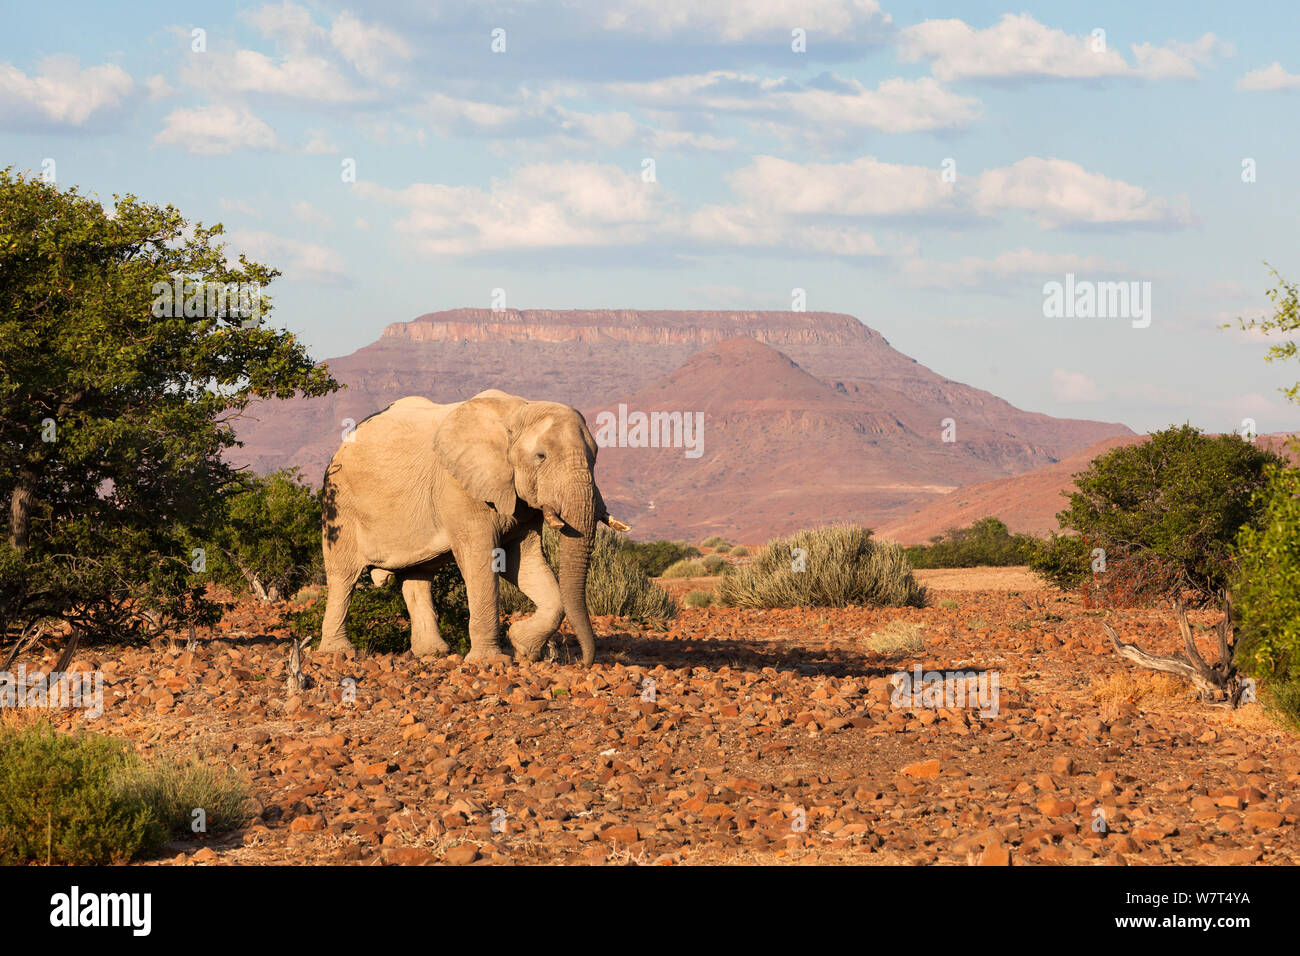 Elefante Desert Bull, ( Loxodonta africana) con Etendeka montagne sullo sfondo, deserto nel campo di Rhino, regione di Kunene, Namibia, può Foto Stock